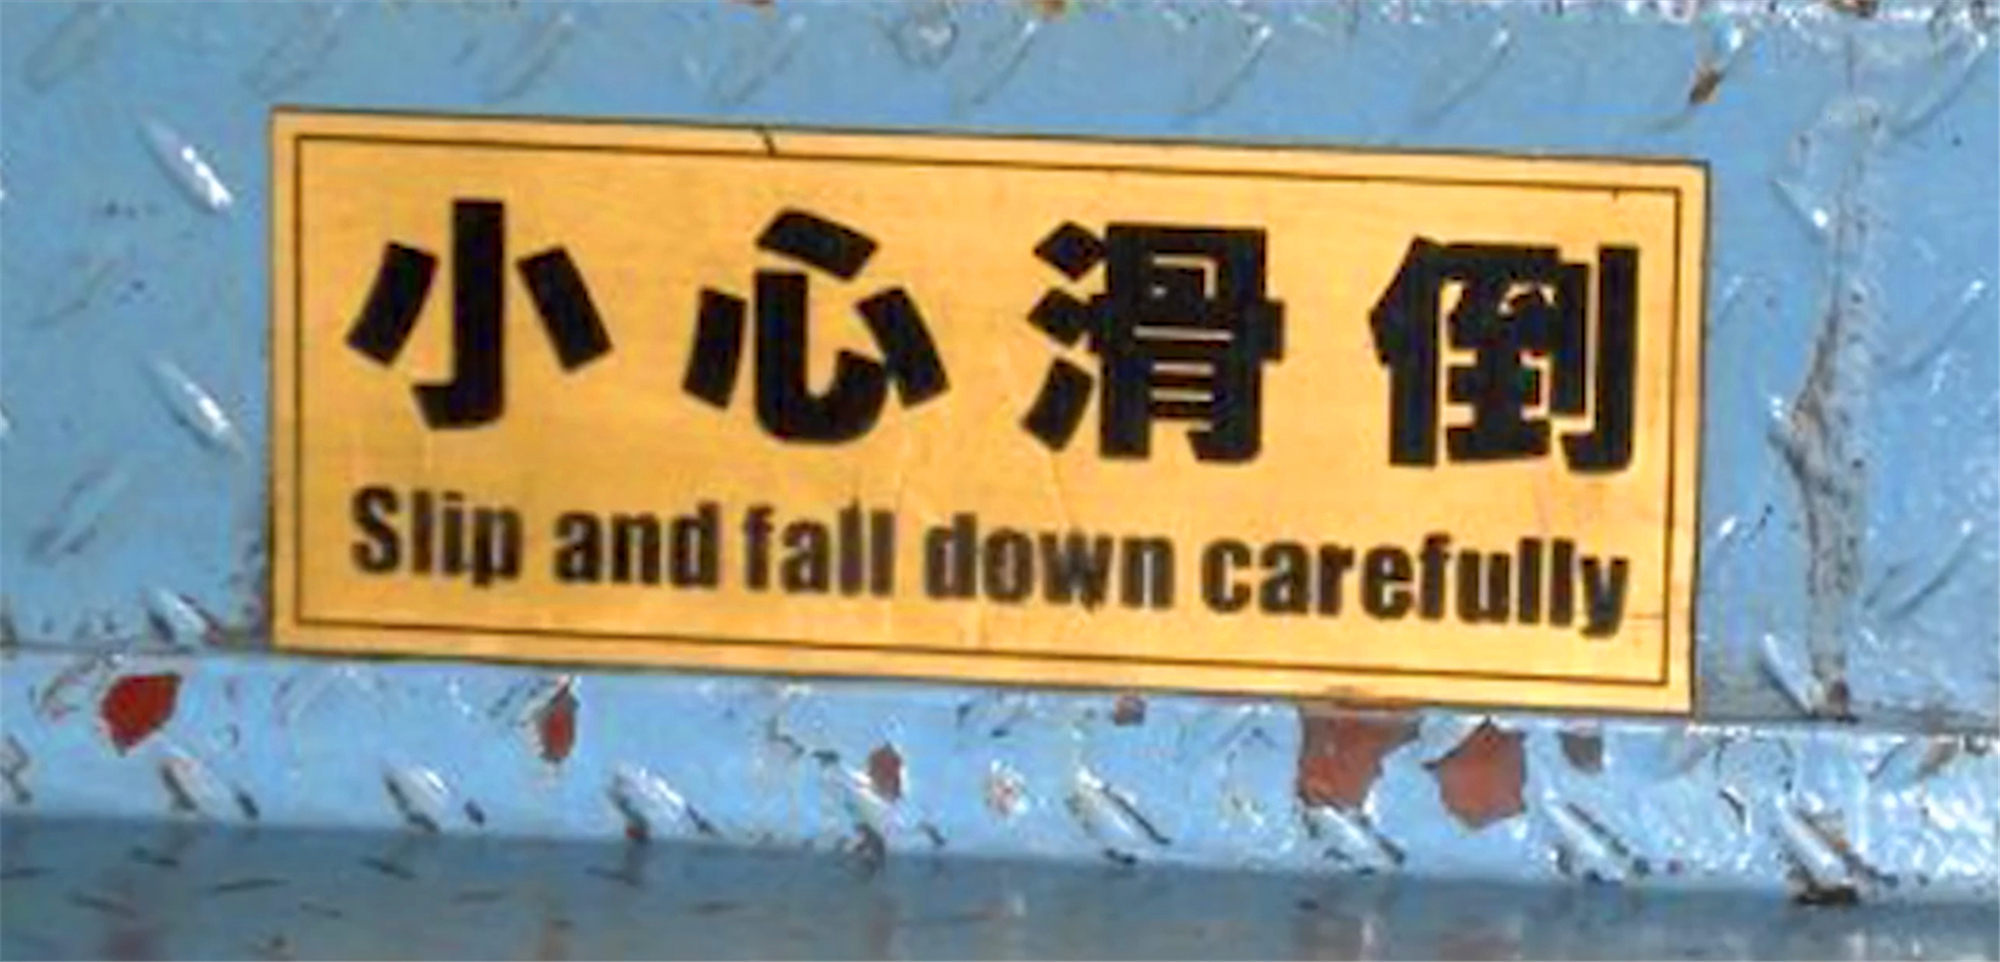 像是这个,小心坠河,意思是要游客小心不要坠河,可是如果直接翻译成